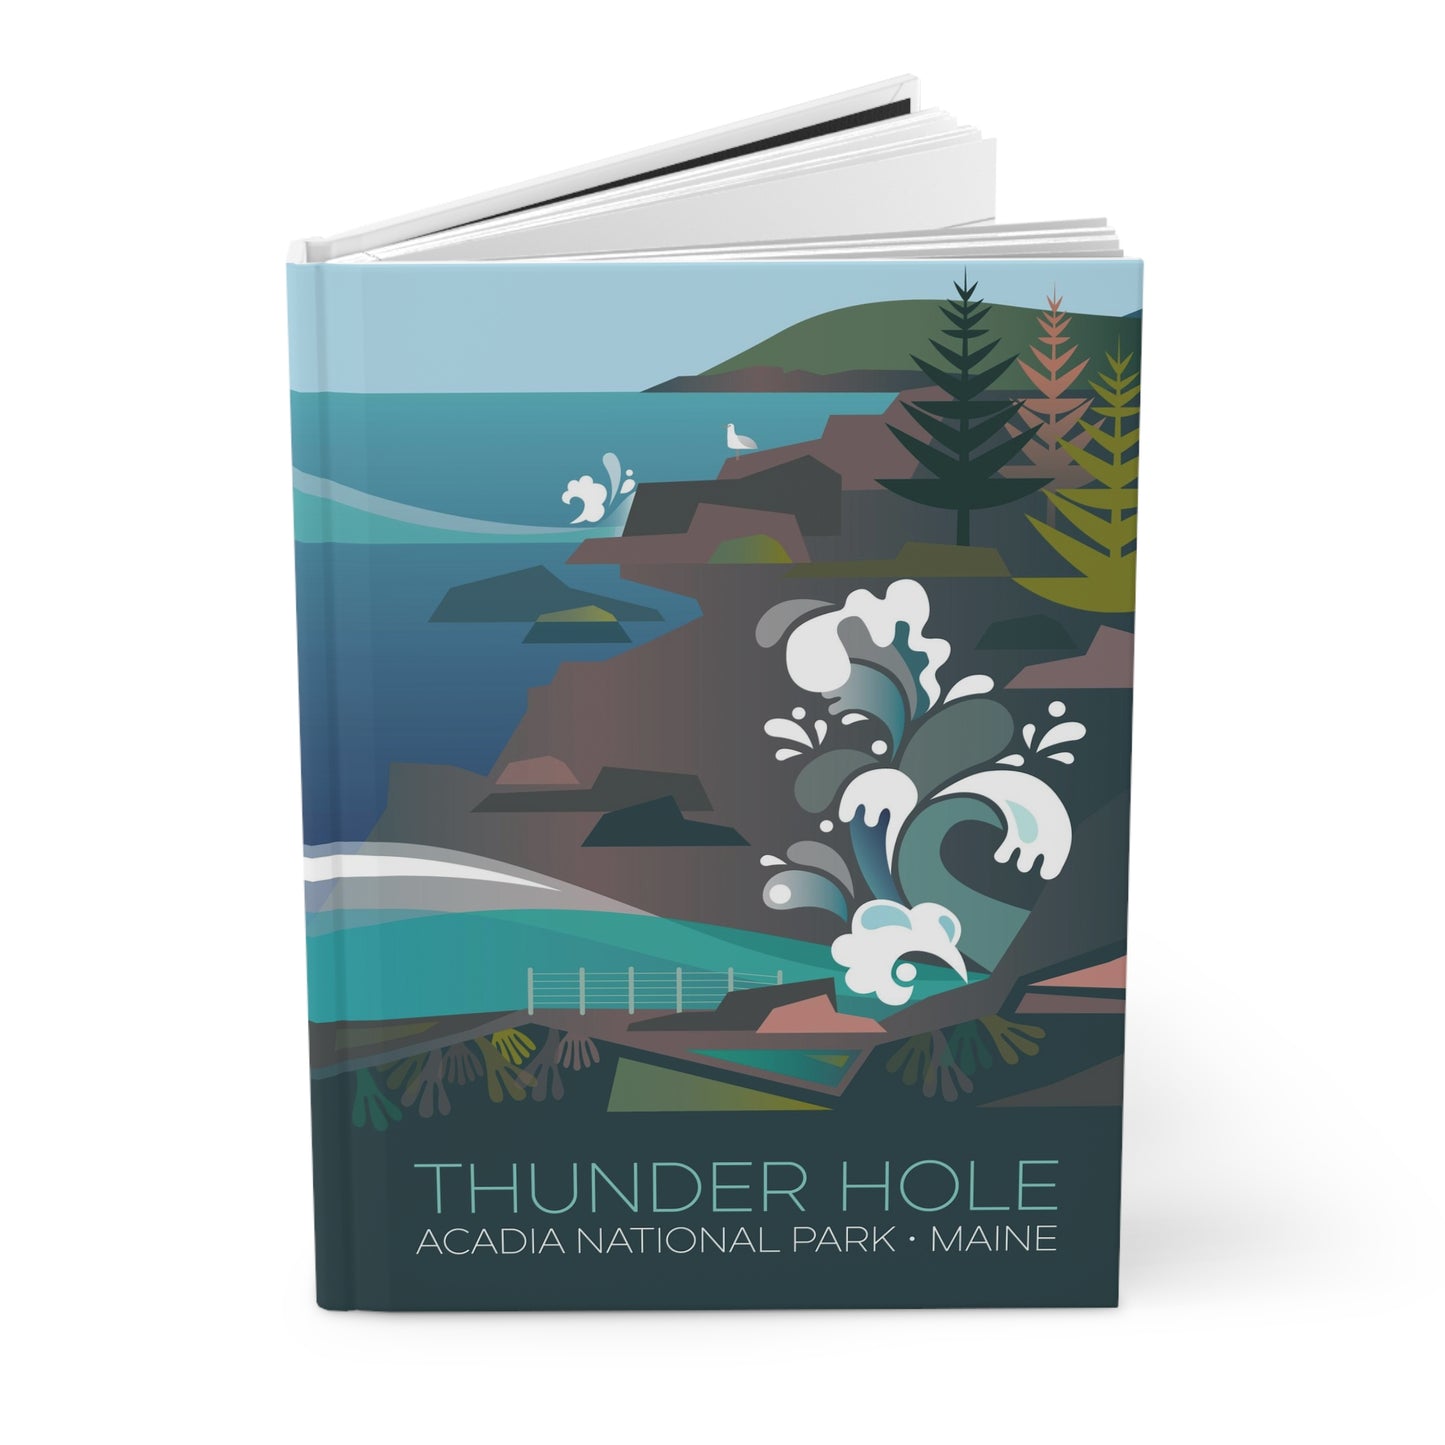 Acadia-Nationalpark, Thunder Hole Hardcover-Notizbuch